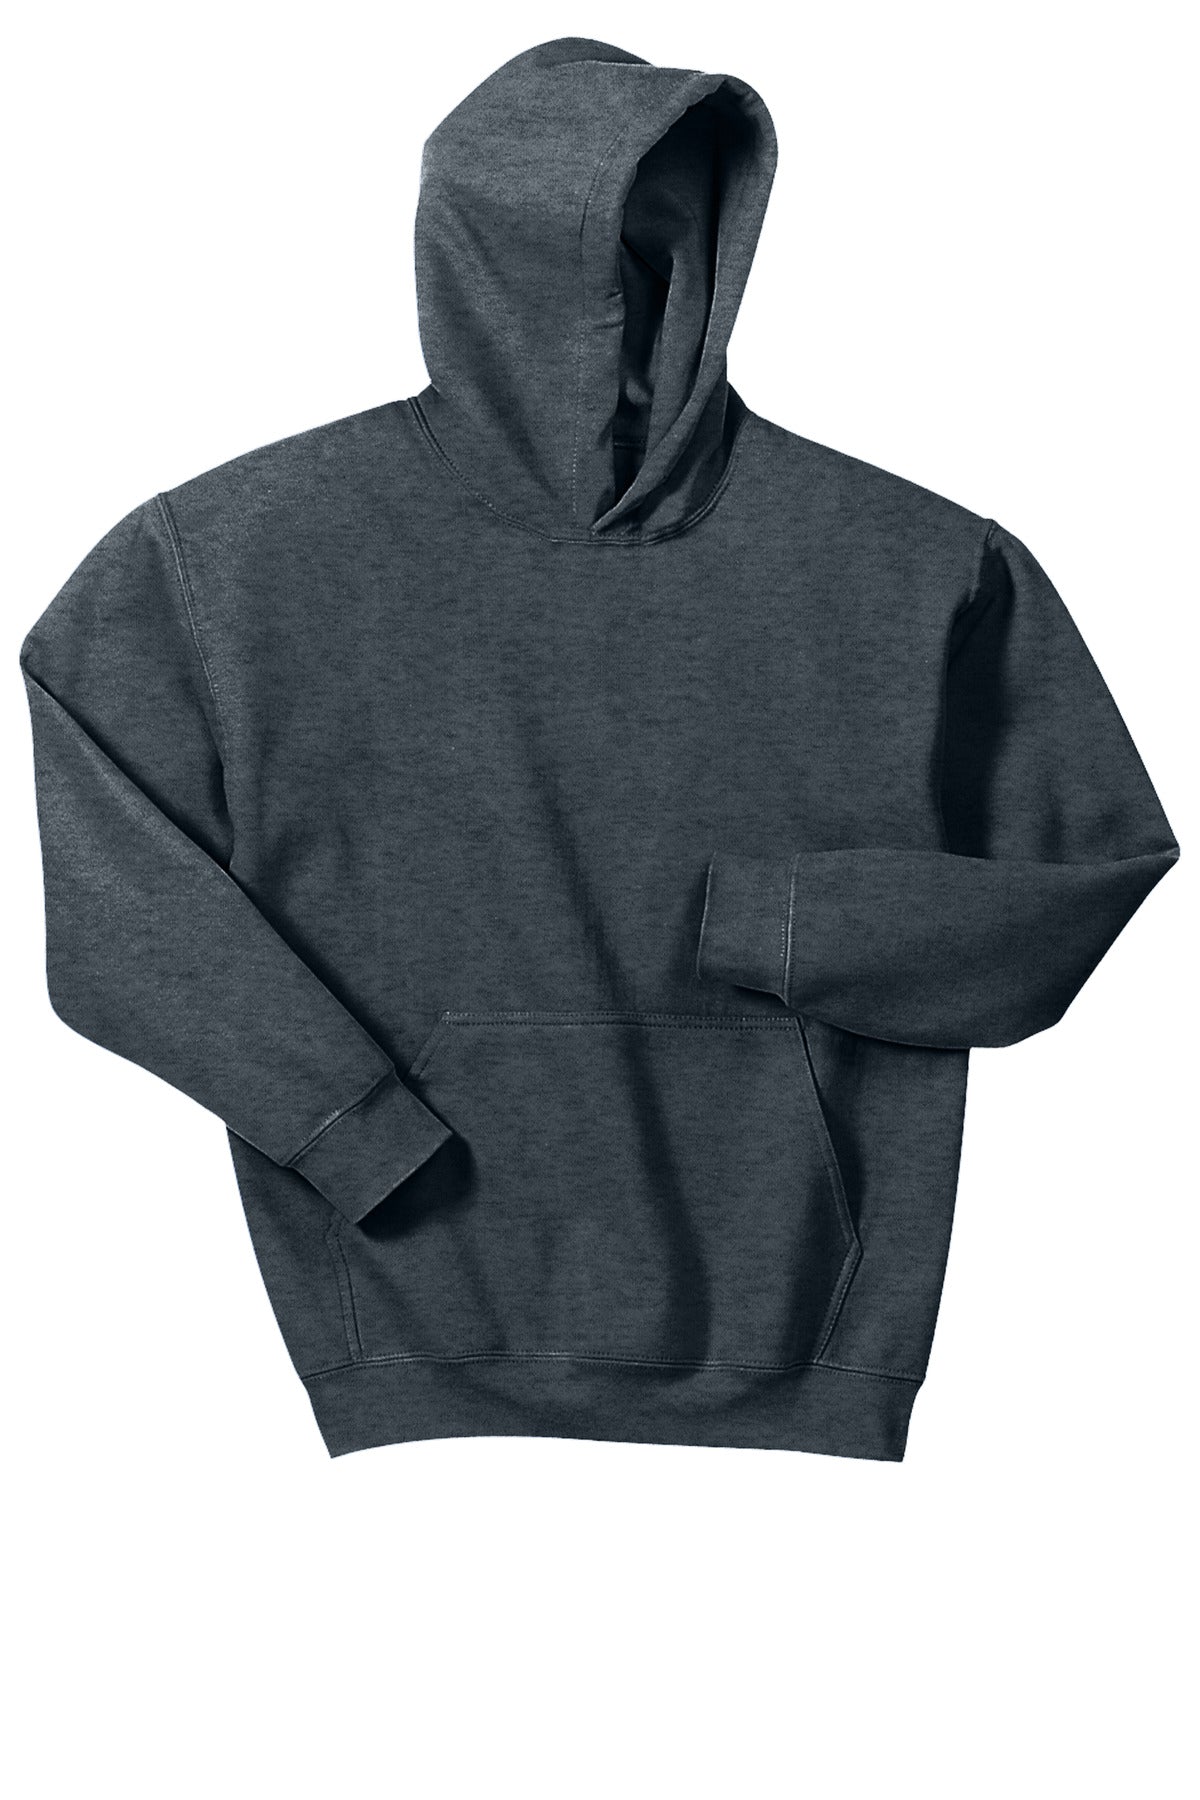 Gildan® - Youth Heavy Blend™ Hooded Sweatshirt. 18500B [Dark Heather] - DFW Impression